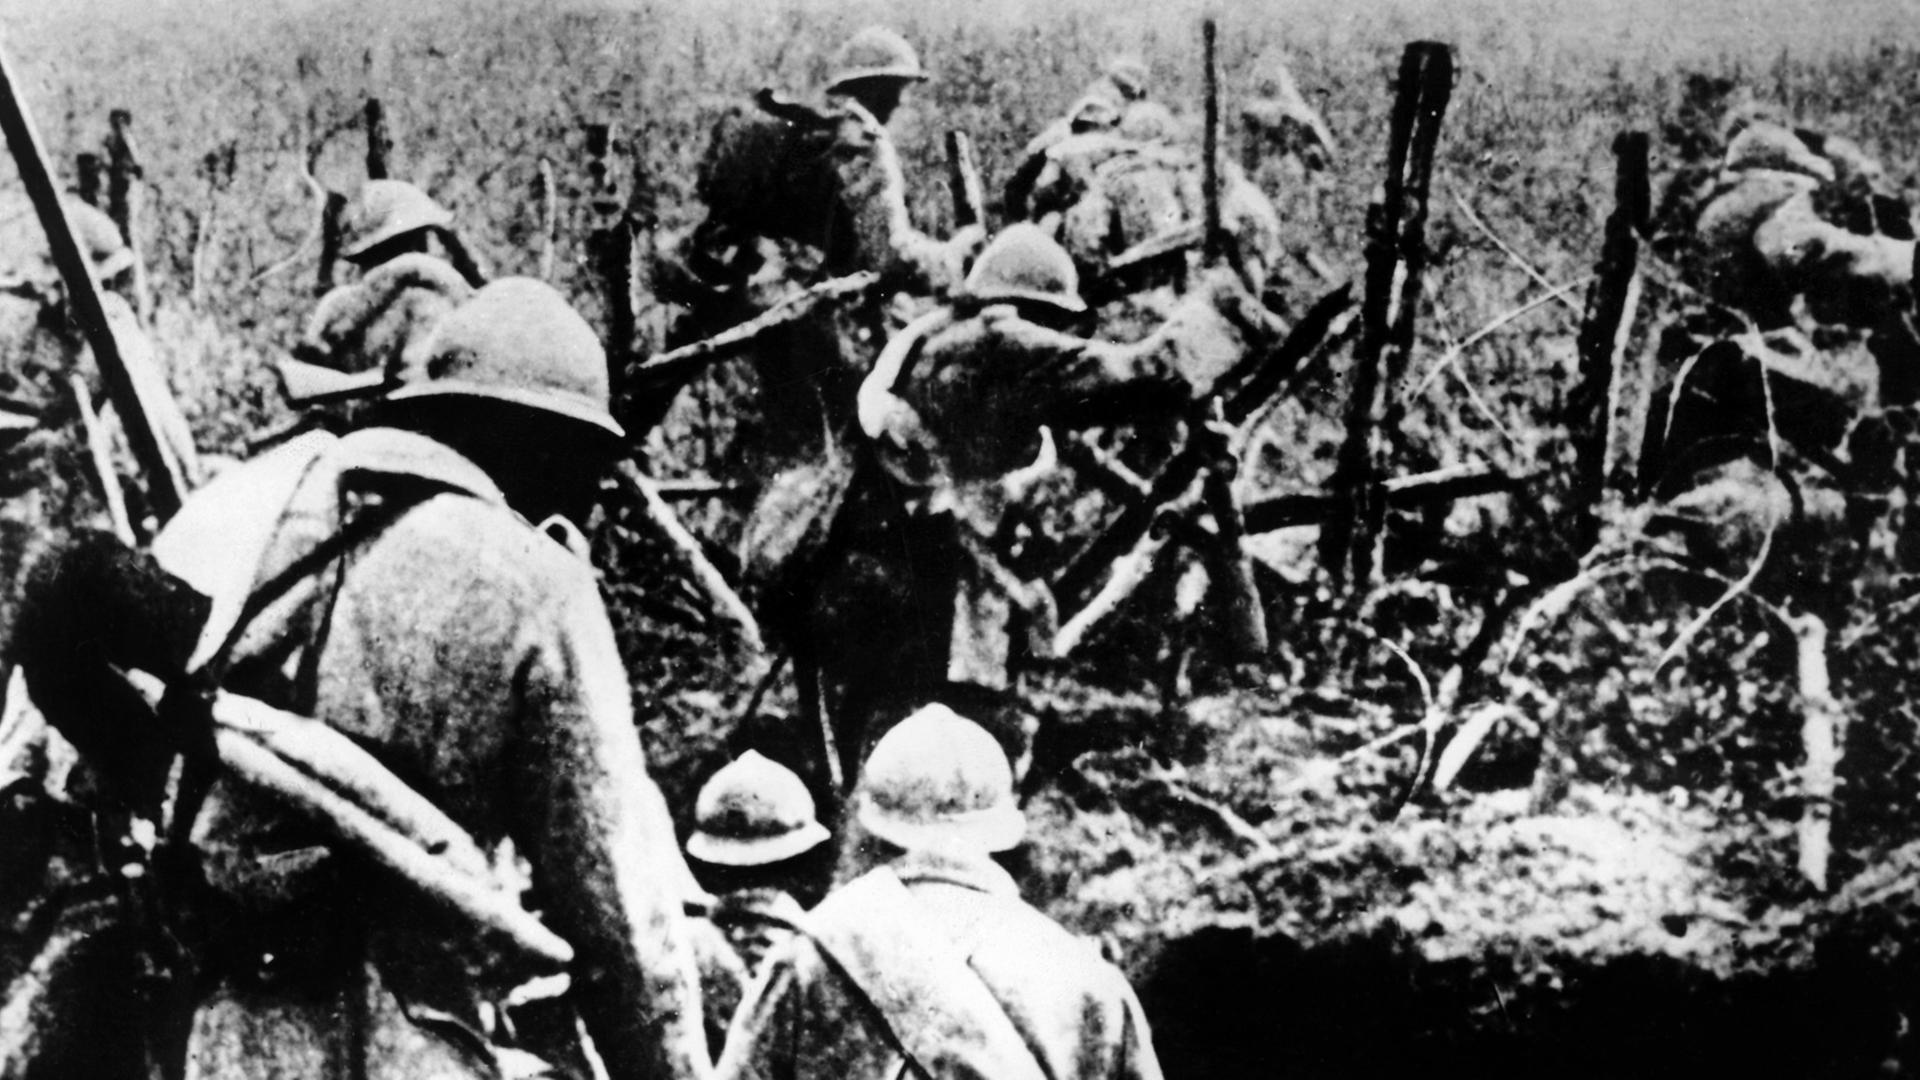 Französische Infanterie auf dem Schlachtfeld von Verdun im 1. Weltkrieg (1914-1918).